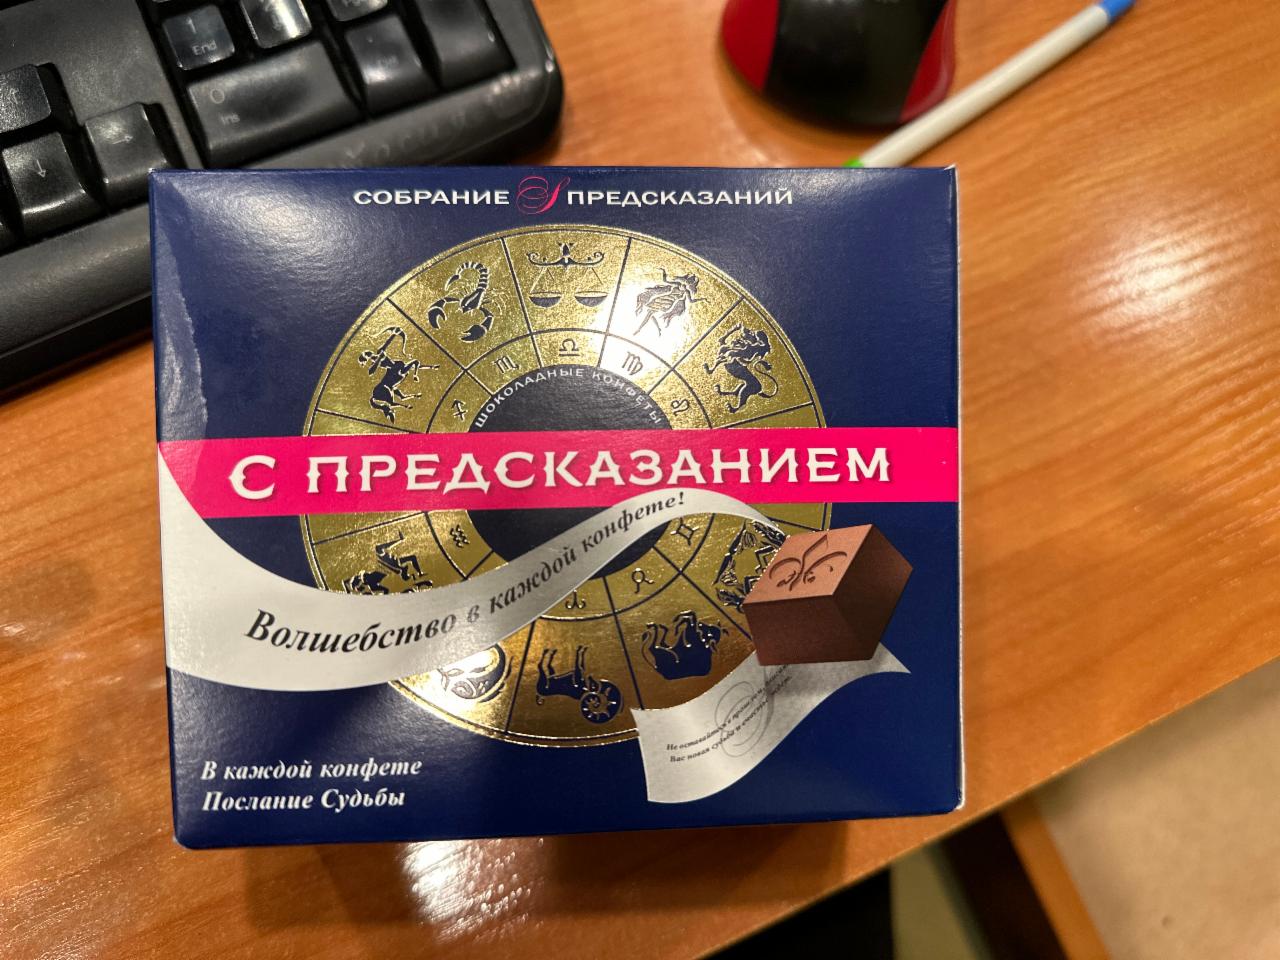 Фото - шоколадные конфеты с предсказанием Собрание предсказаний